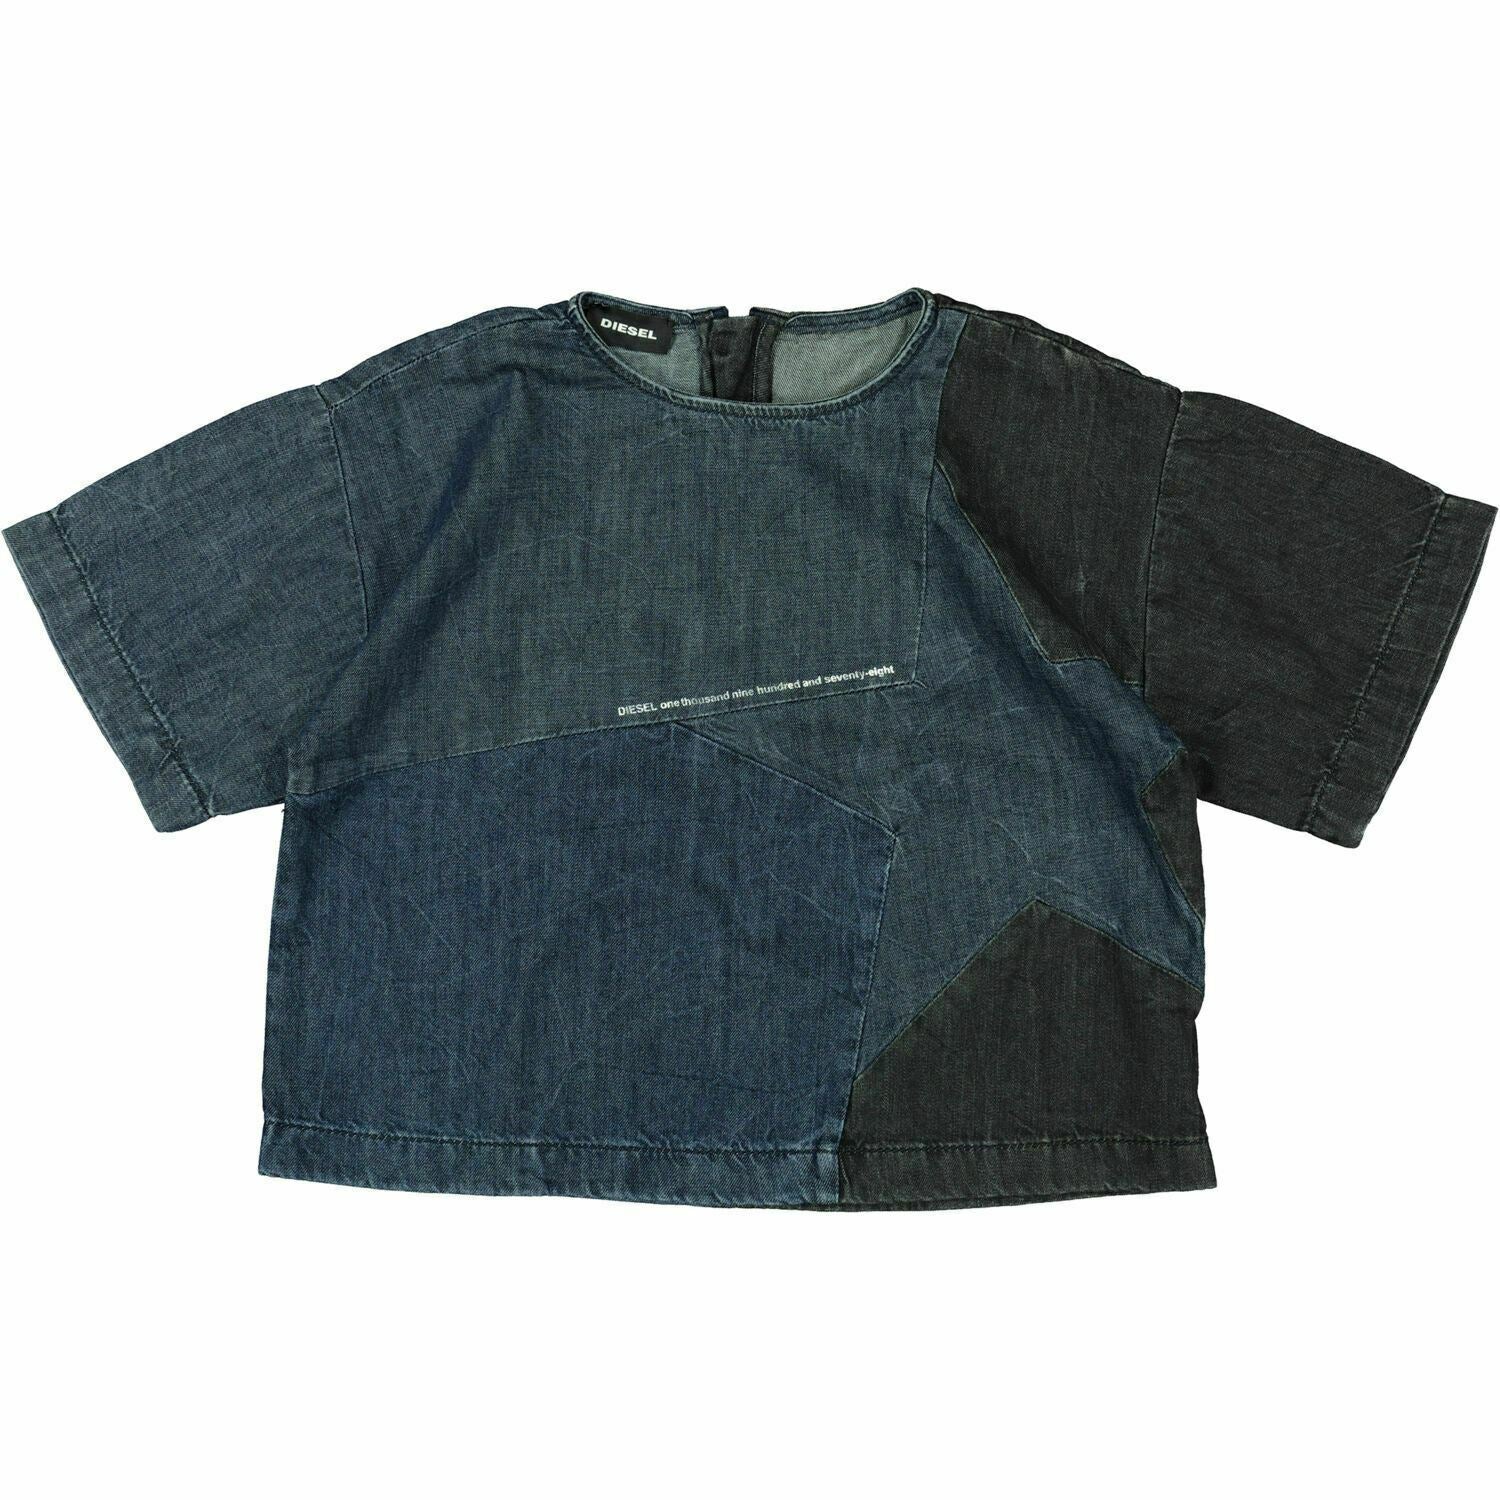 DIESEL Girls' Kids' CILAY Short Sleeve Denim Top, Blue/Black, 8 years